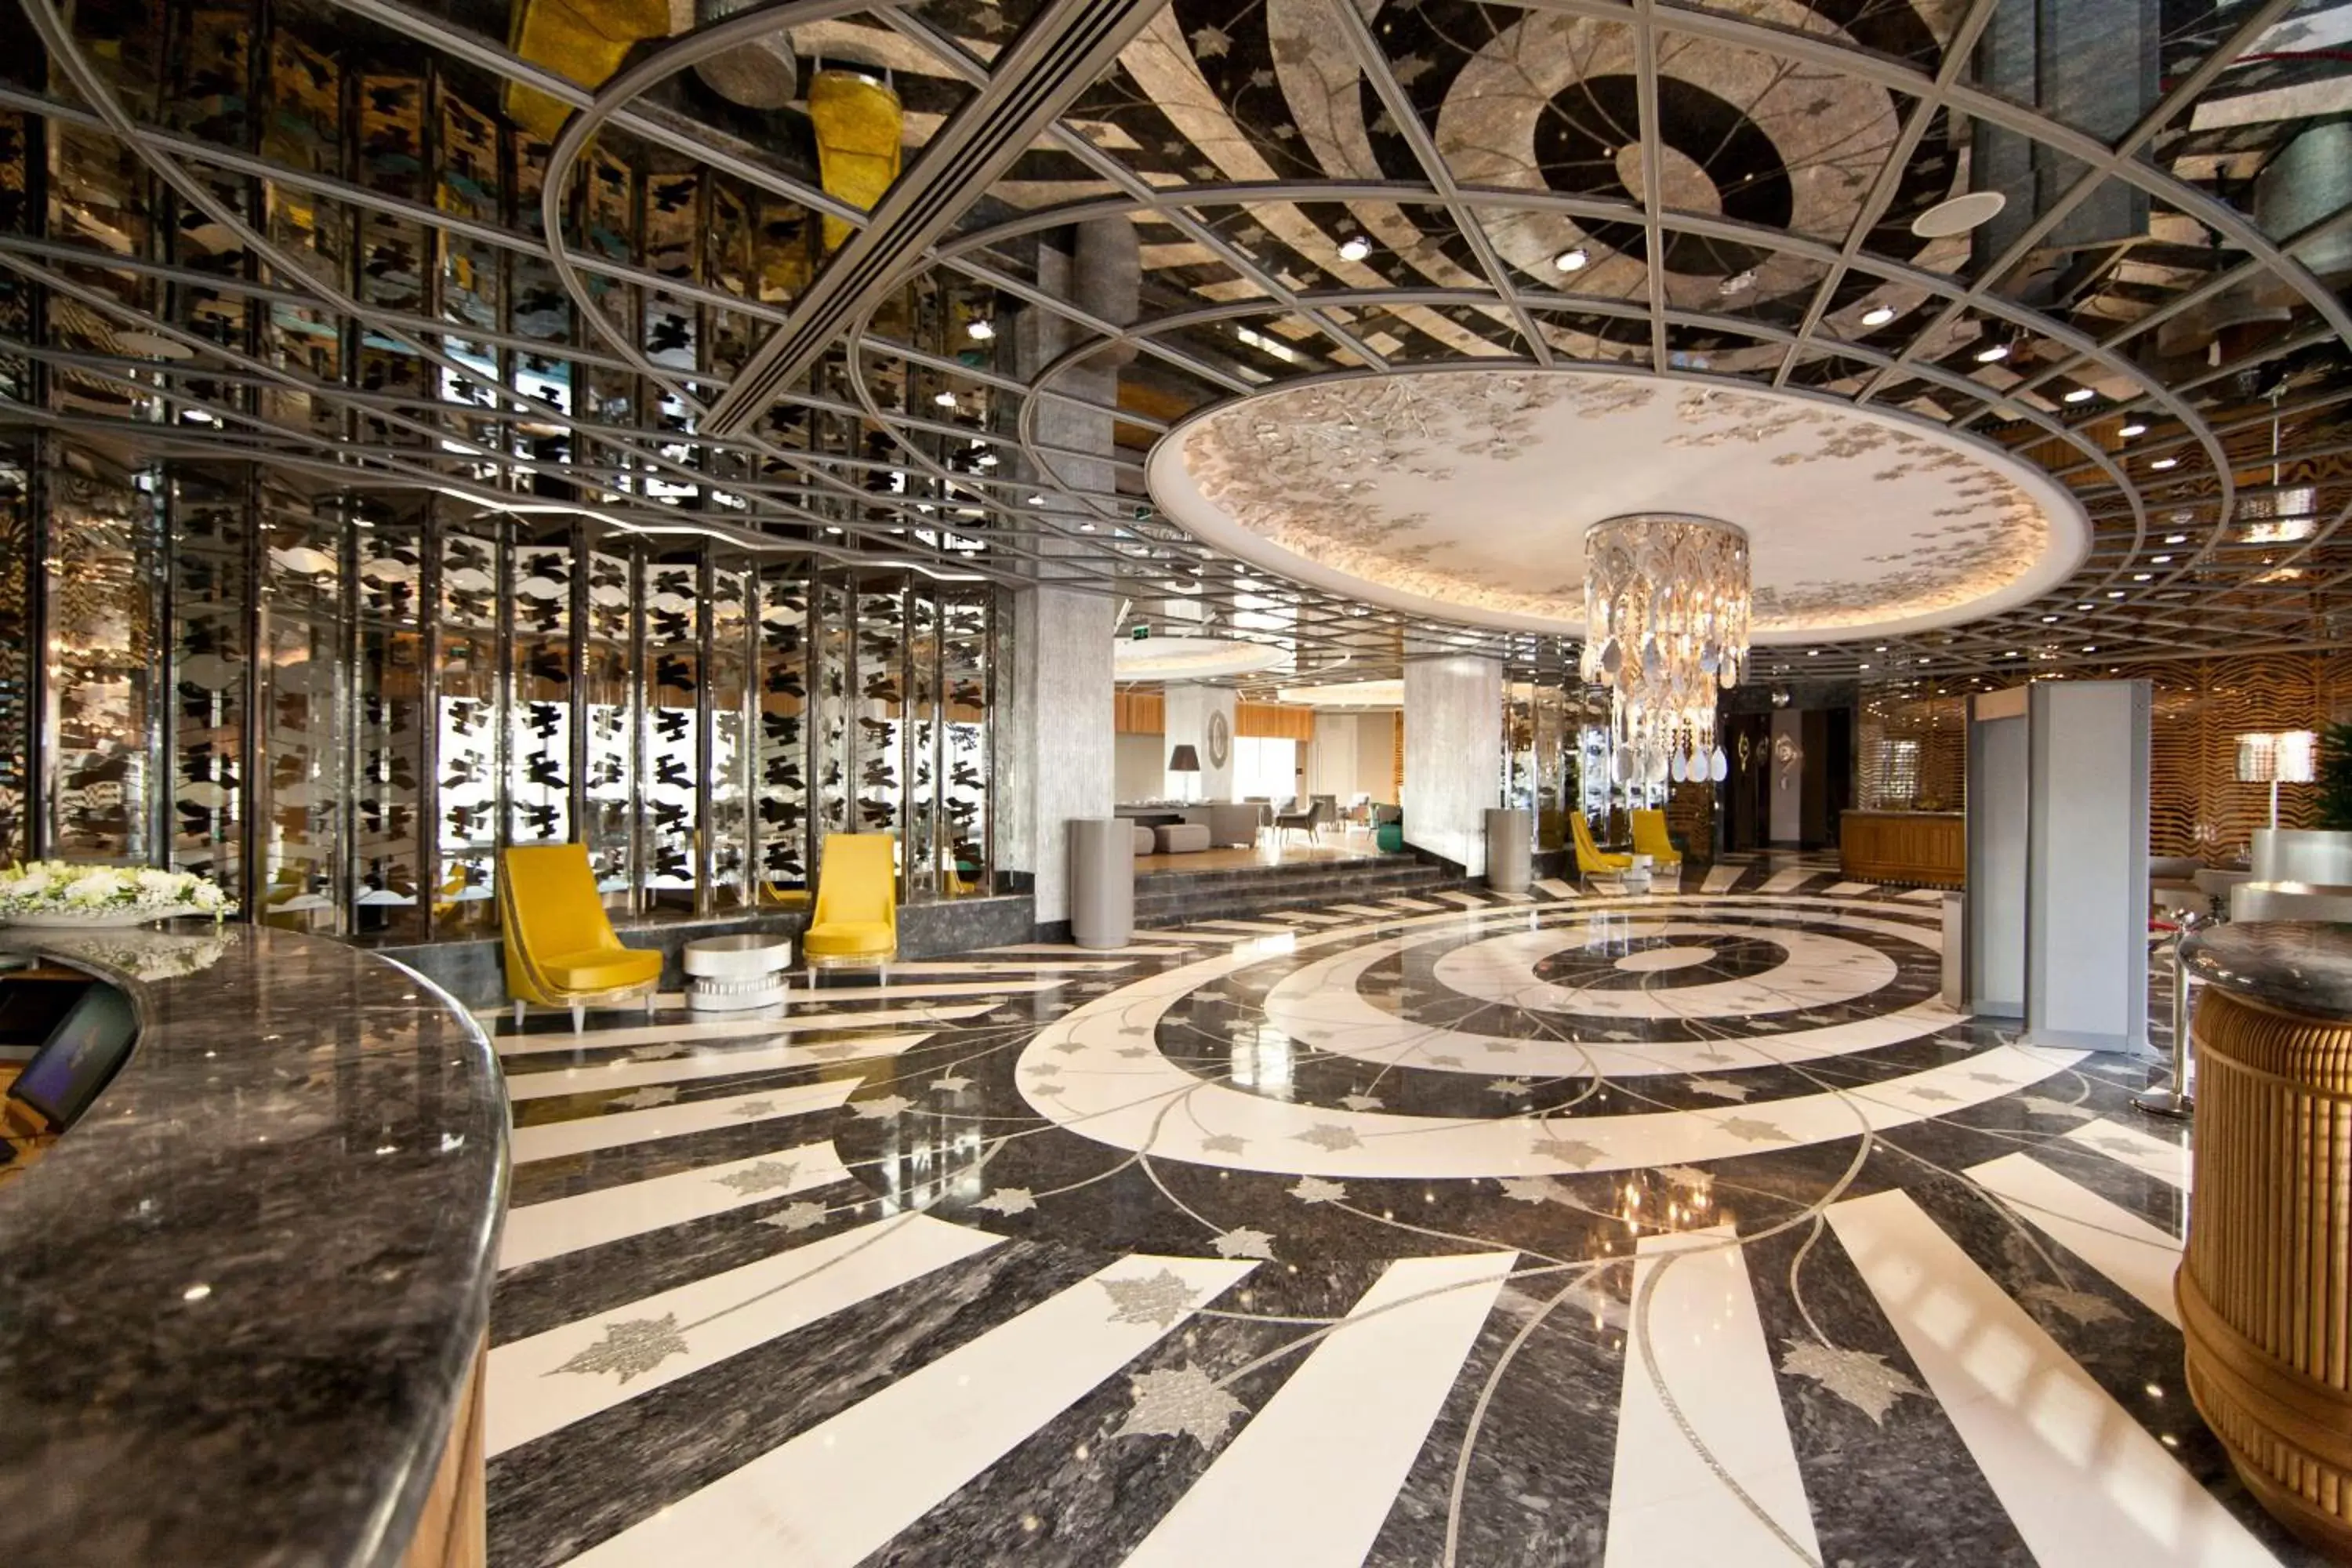 Lobby or reception in Wyndham Grand Istanbul Kalamış Marina Hotel